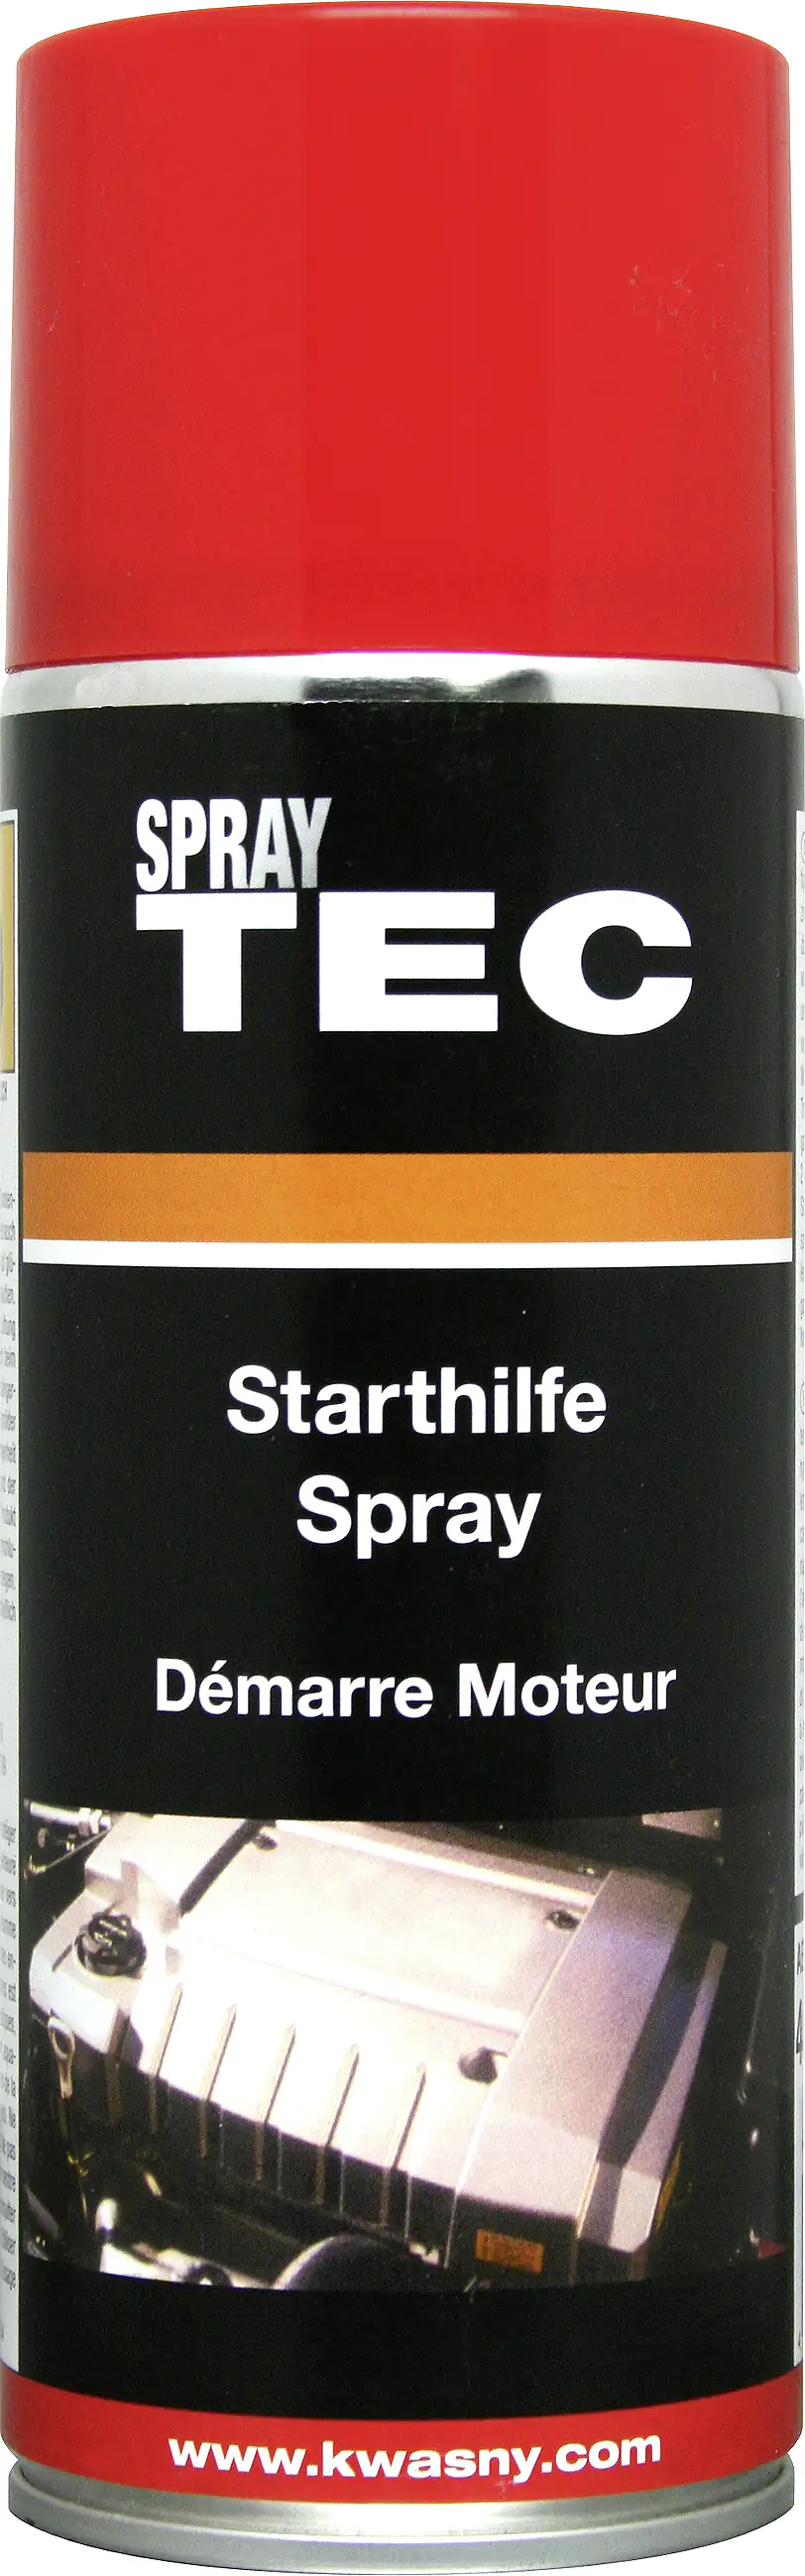 SprayTEC Starthilfe Spray 400ml kaufen